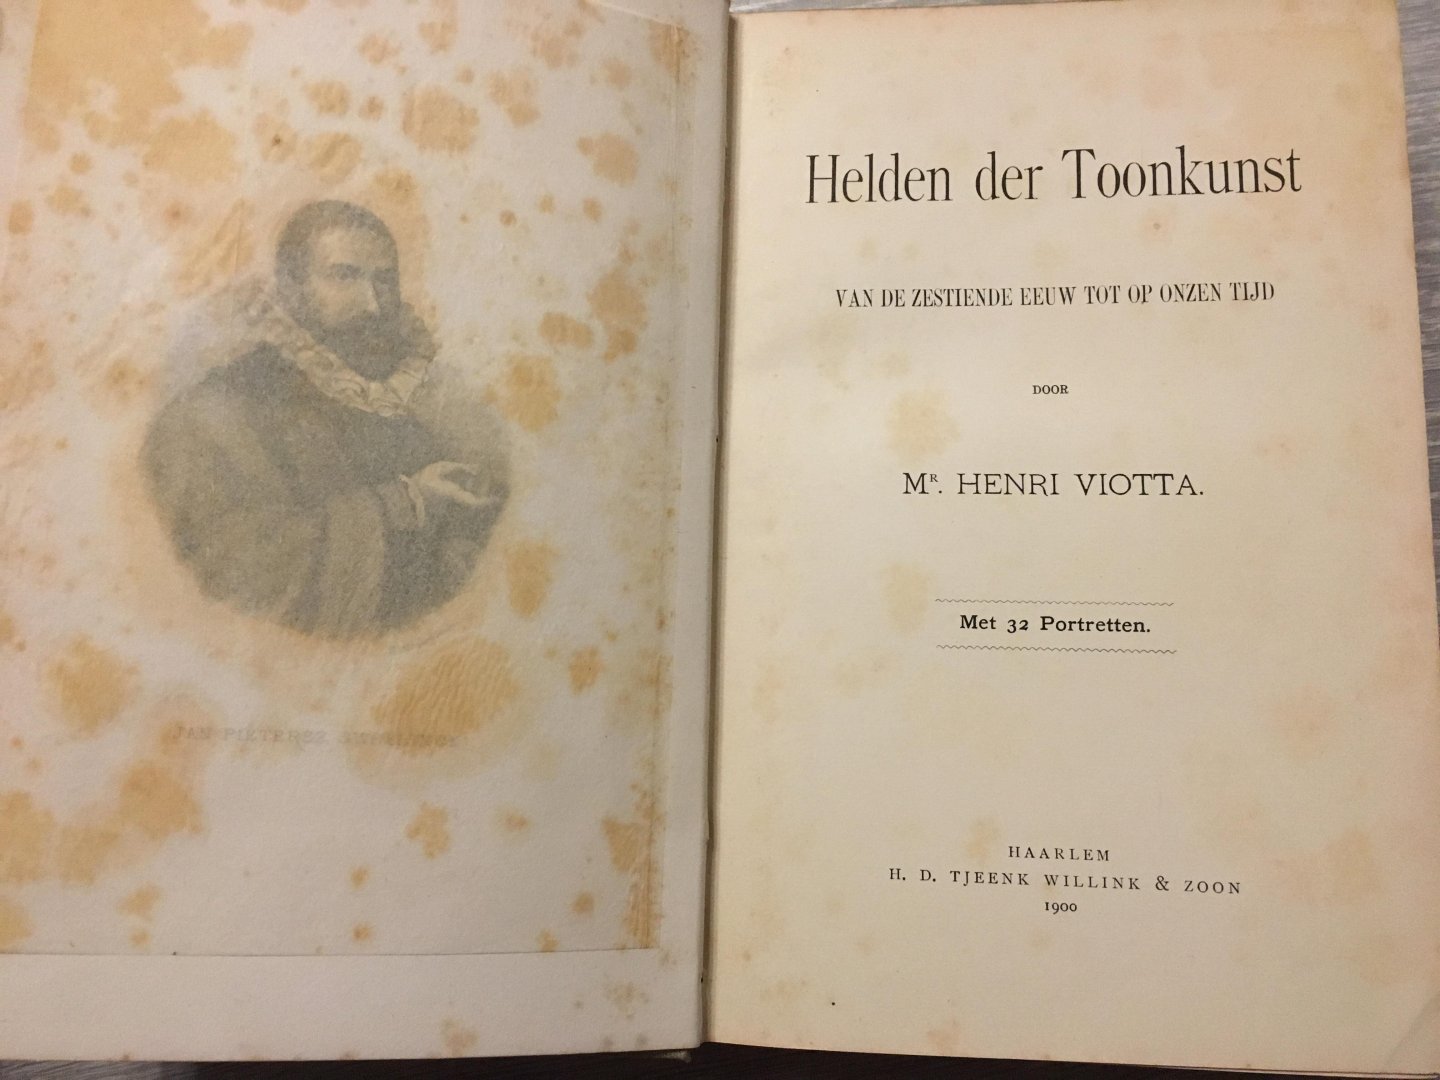 Henri Viotta - Helden der Toonkunst, van de zestiende eeuw tot op onzen tijd